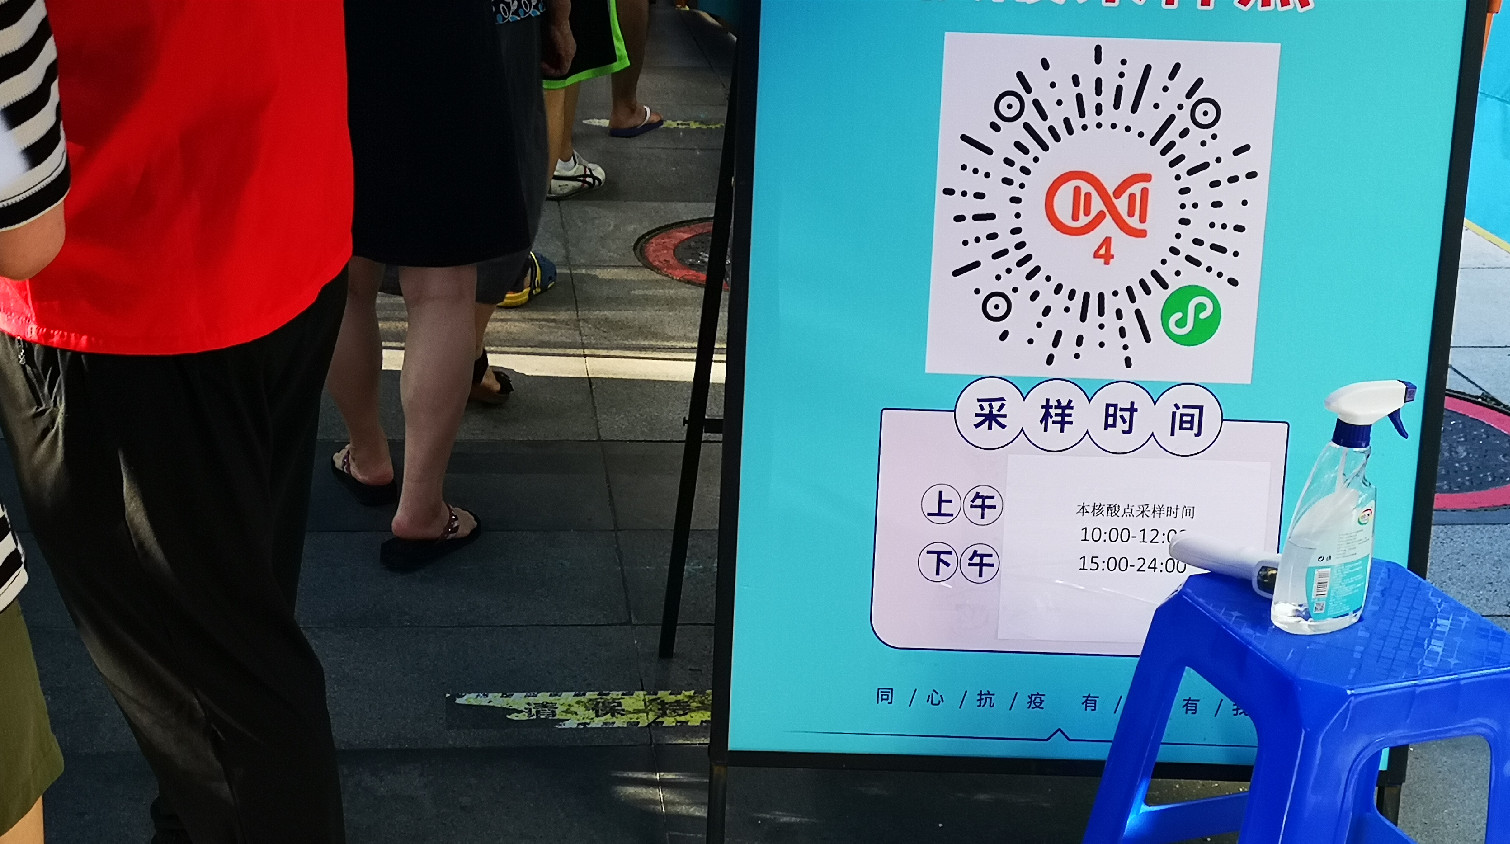 8月23日深圳在隔離密接人員中發現4例 在閉環管理的重點人員中發現2例 在社區篩查中發現2例